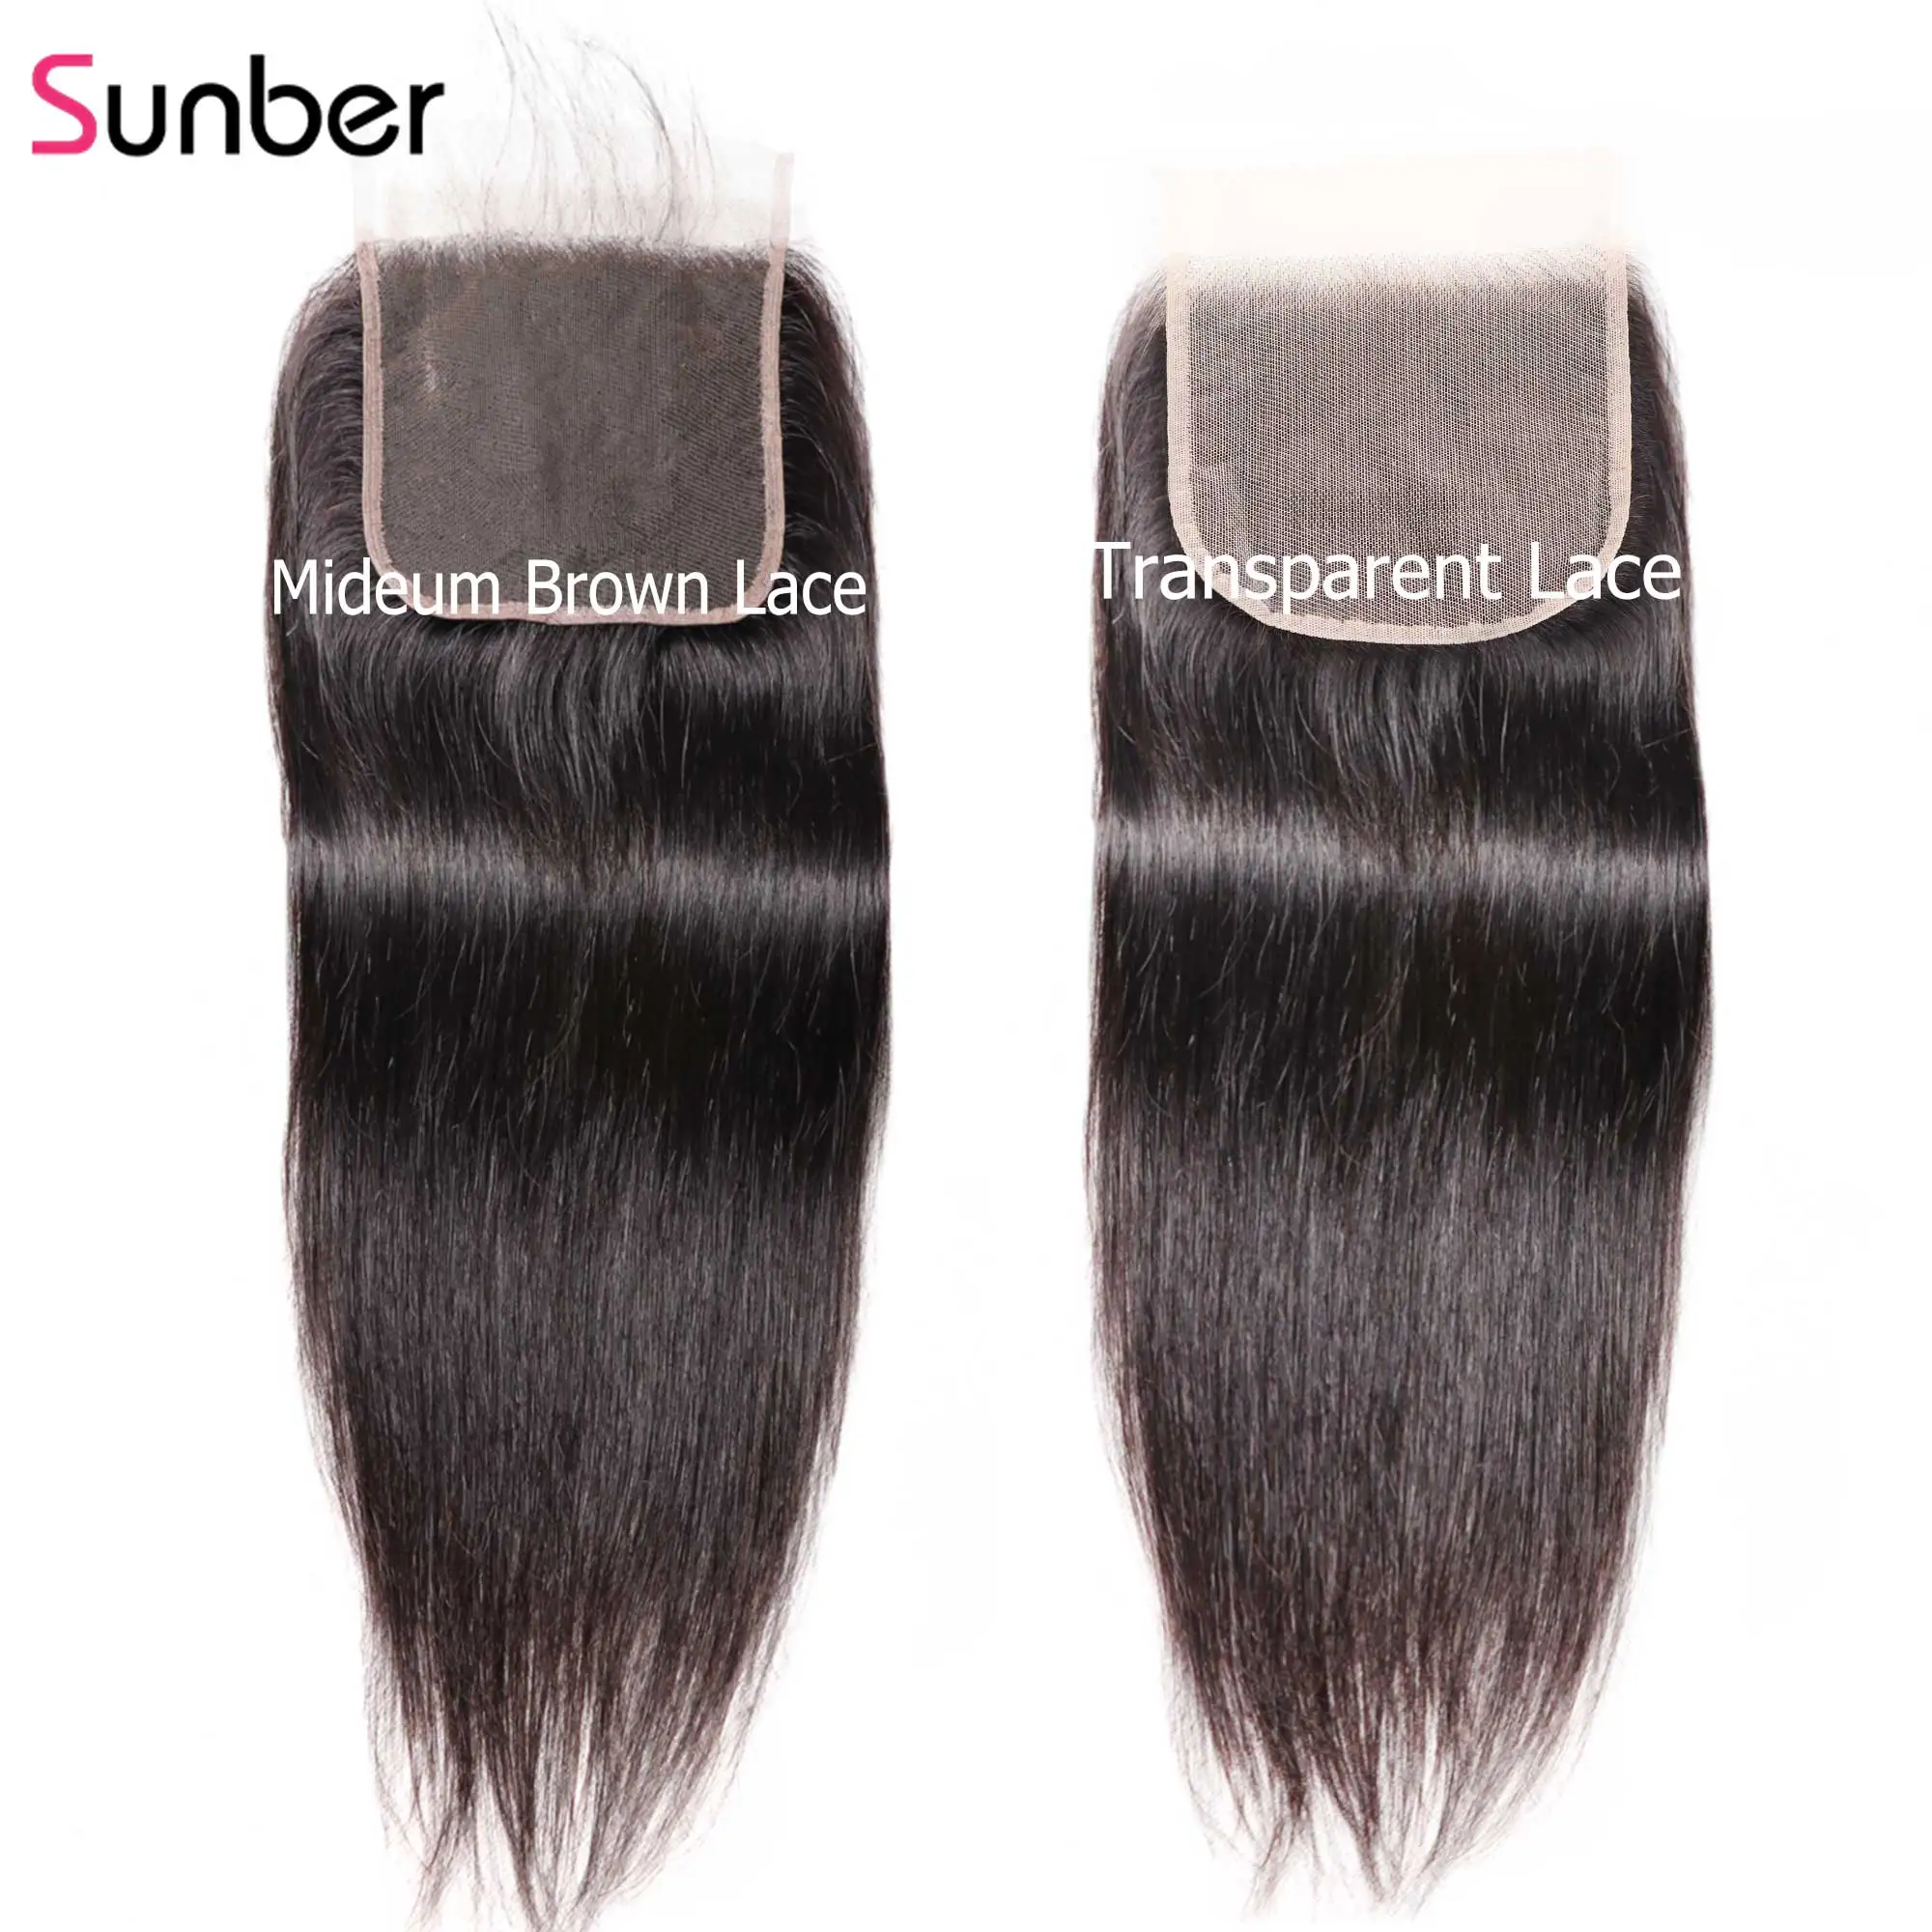 Sunber волосы прямые 5X5 Preuvian прозрачные волосы для наращивания наращивание 8-18 дюймов человеческий парик из волос Реми